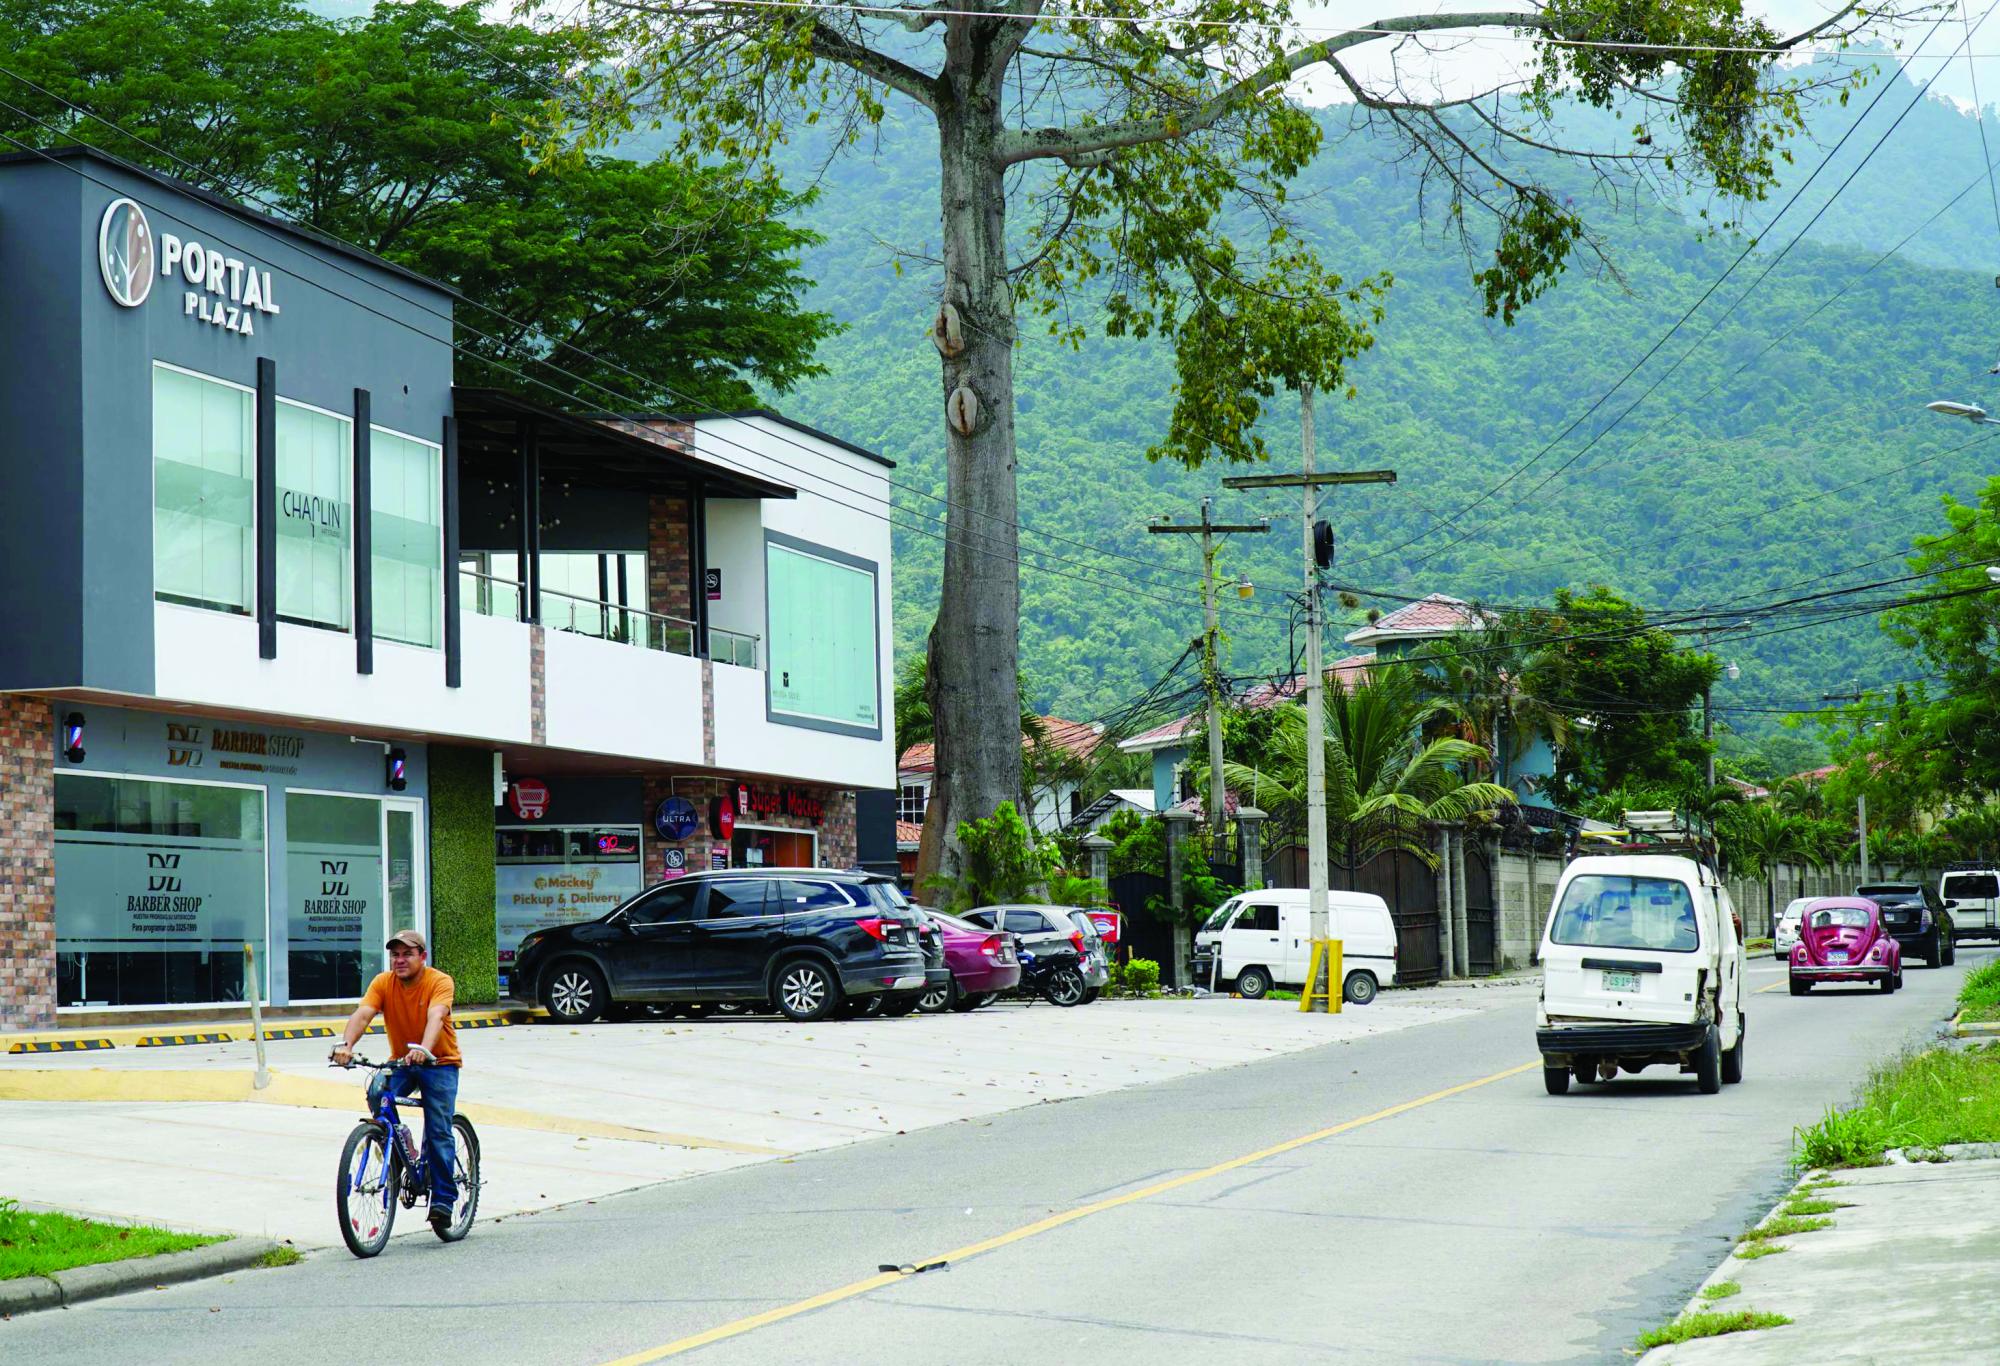 El sector noroeste es el de mayor plusvalía en San Pedro Sula